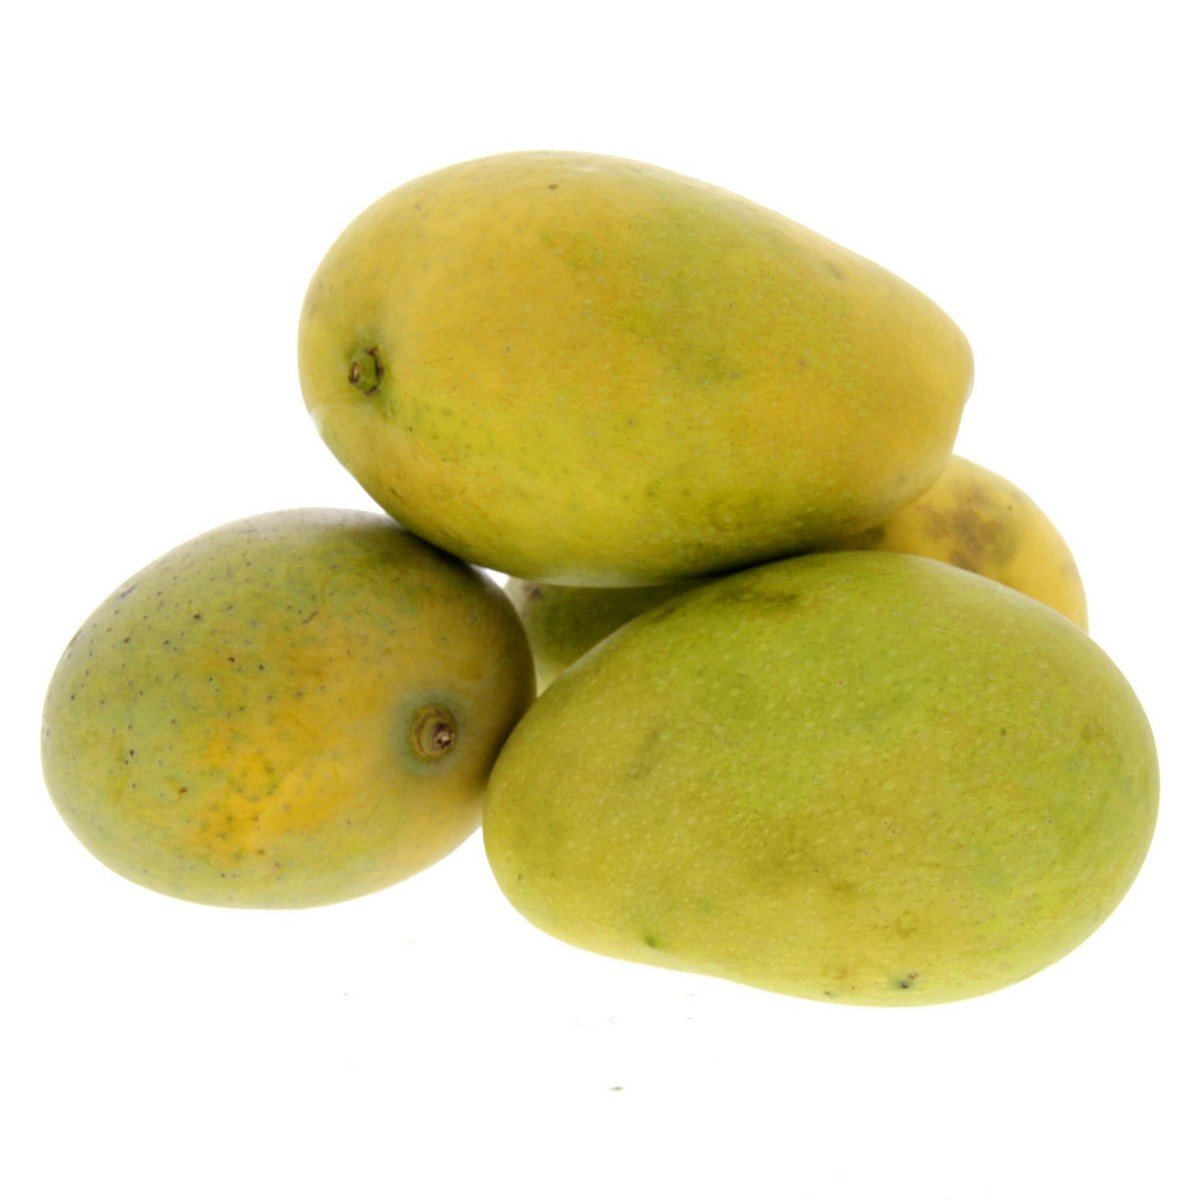 Buy Mango Badami 1 kg Online at Best Price | Mangoes | Lulu KSA in UAE